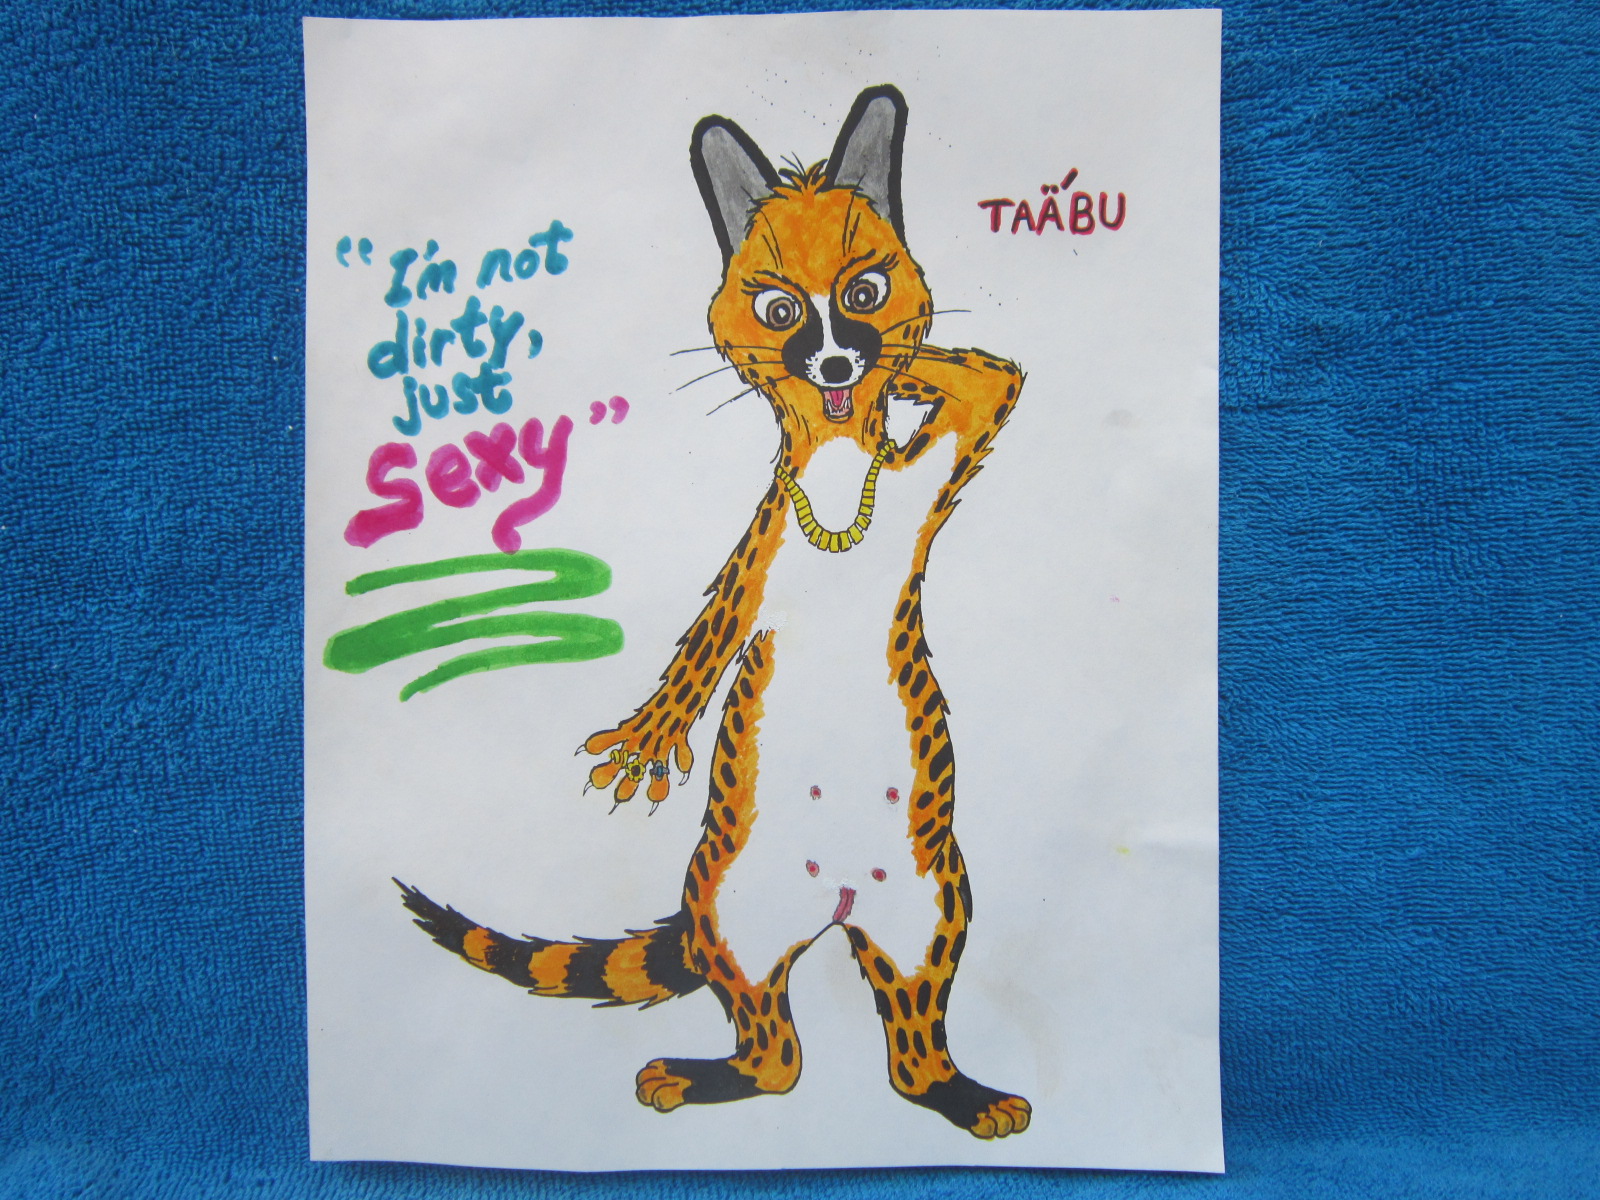 Taabu the genet